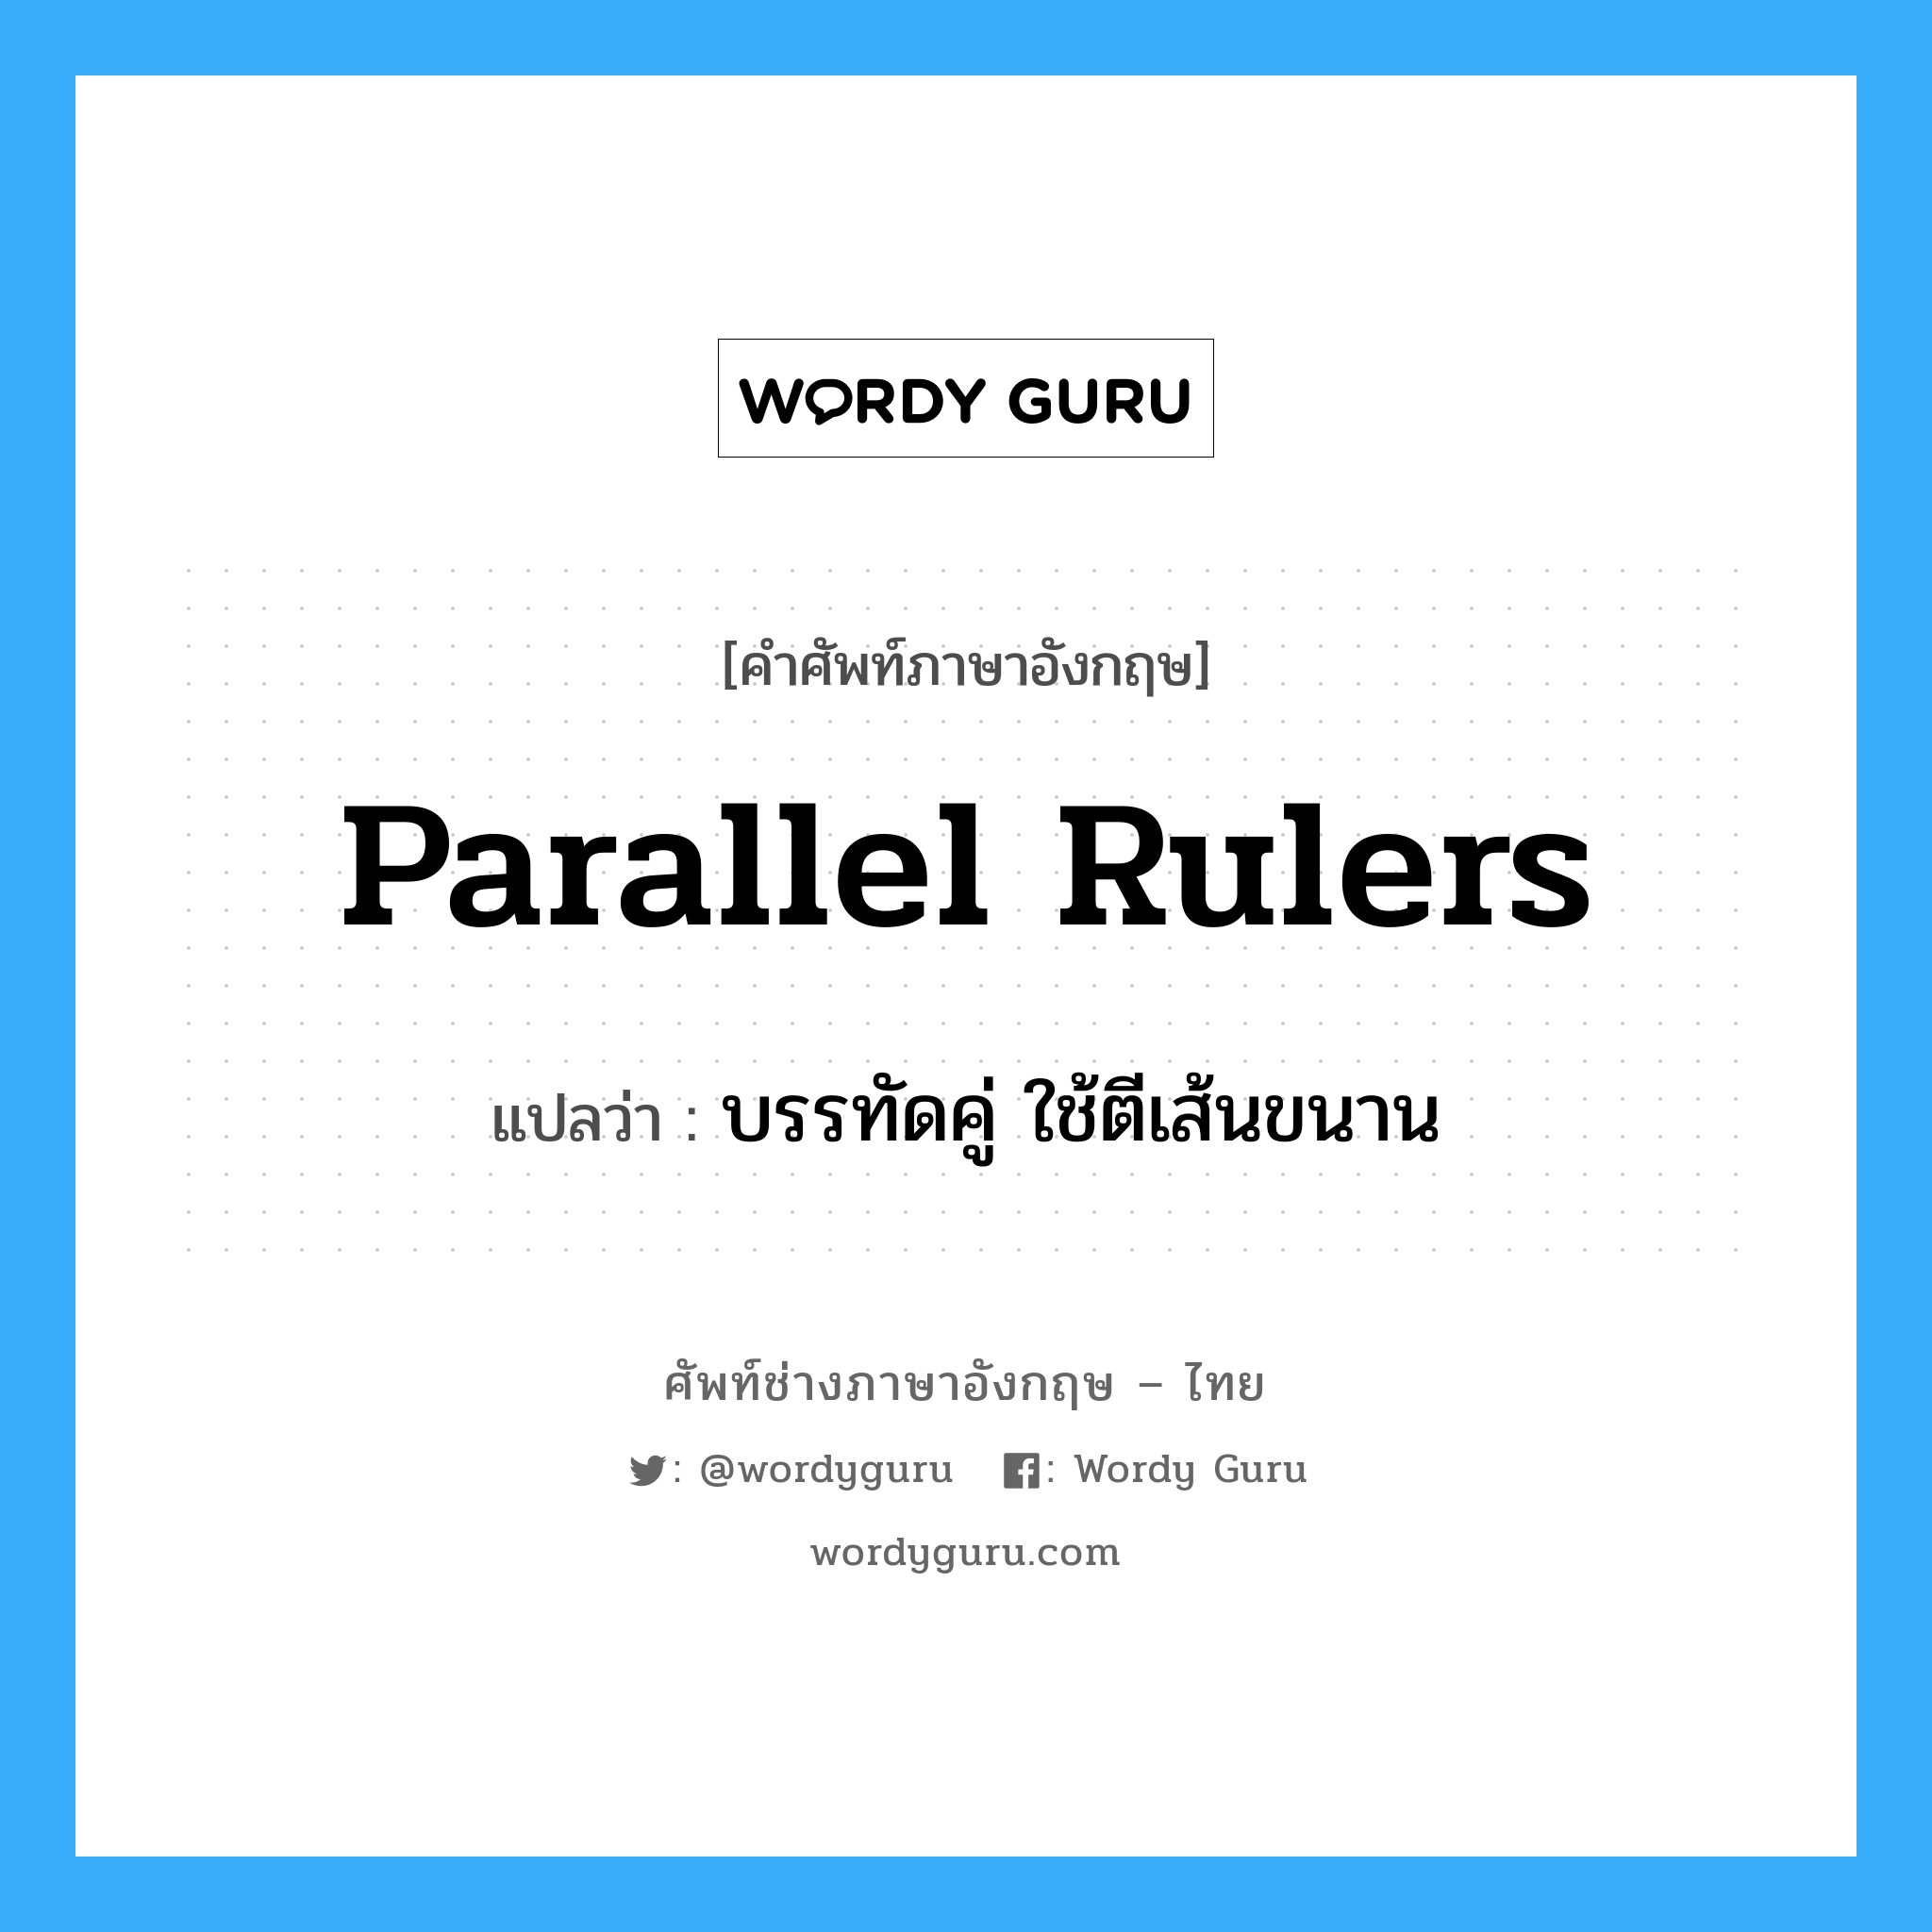 บรรทัดคู่ ใช้ตีเส้นขนาน ภาษาอังกฤษ?, คำศัพท์ช่างภาษาอังกฤษ - ไทย บรรทัดคู่ ใช้ตีเส้นขนาน คำศัพท์ภาษาอังกฤษ บรรทัดคู่ ใช้ตีเส้นขนาน แปลว่า parallel rulers